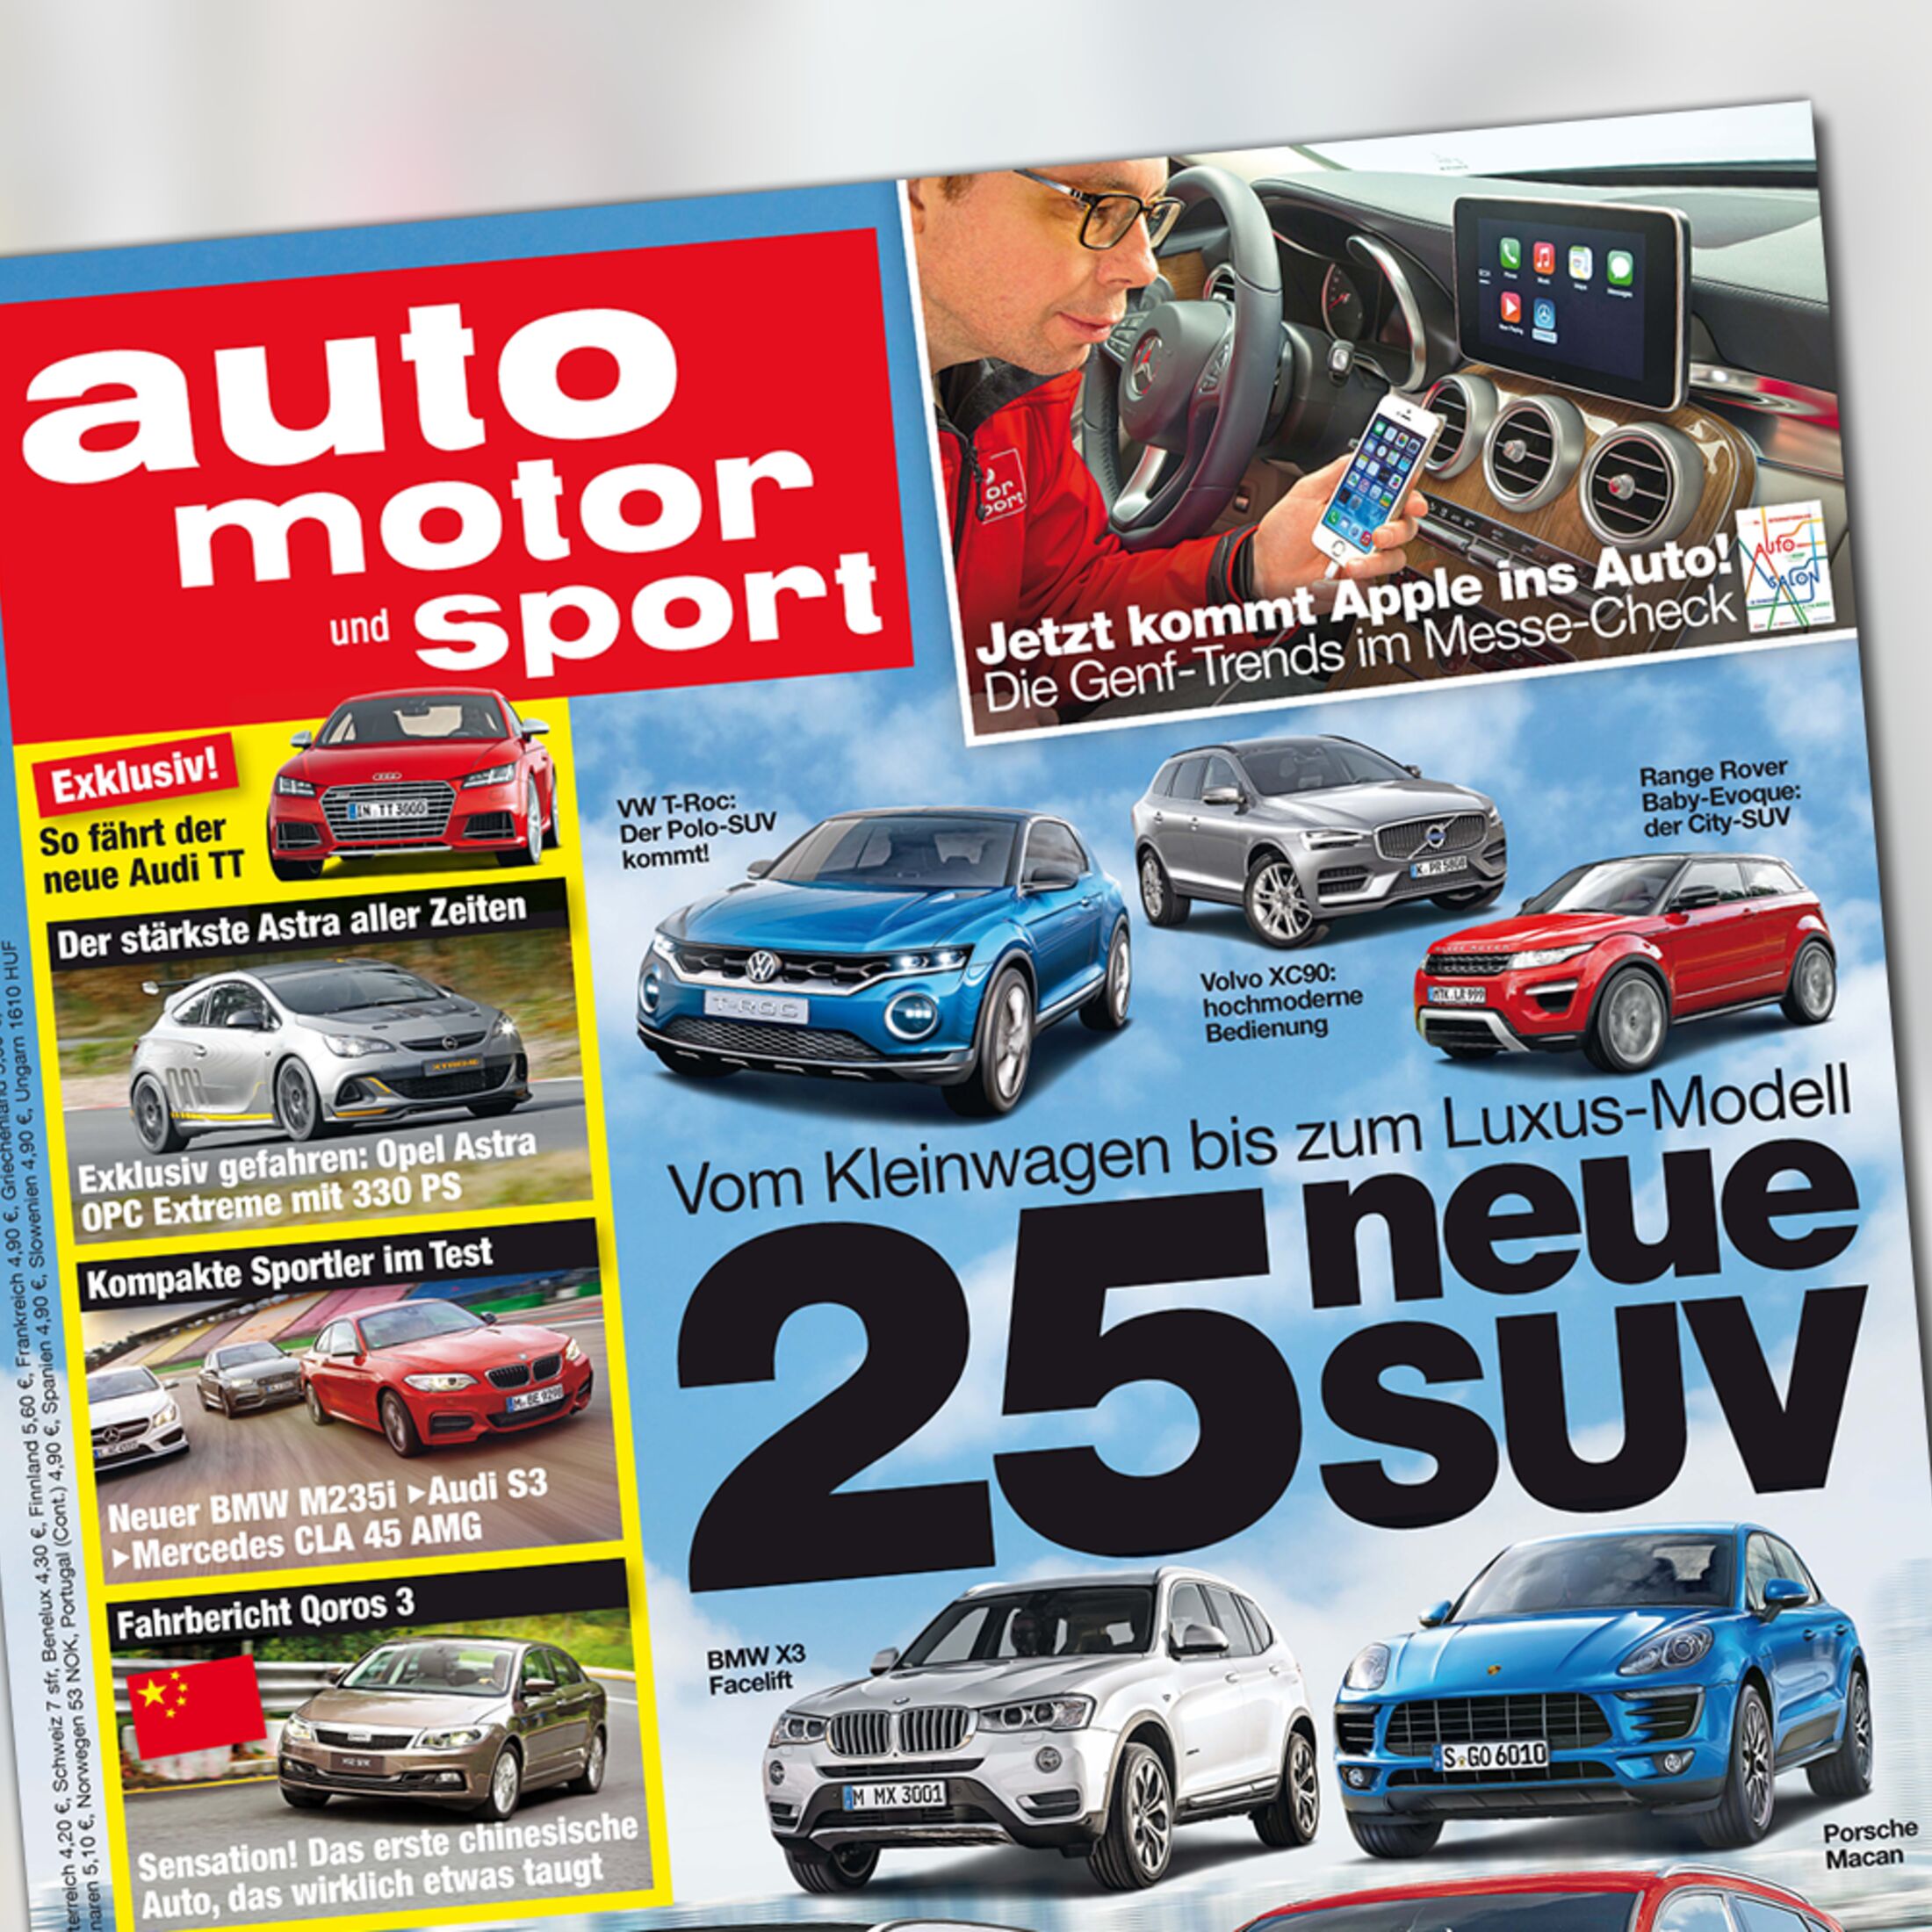 Neues Heft: 25 neue SUV und Audi TT Fahrbericht